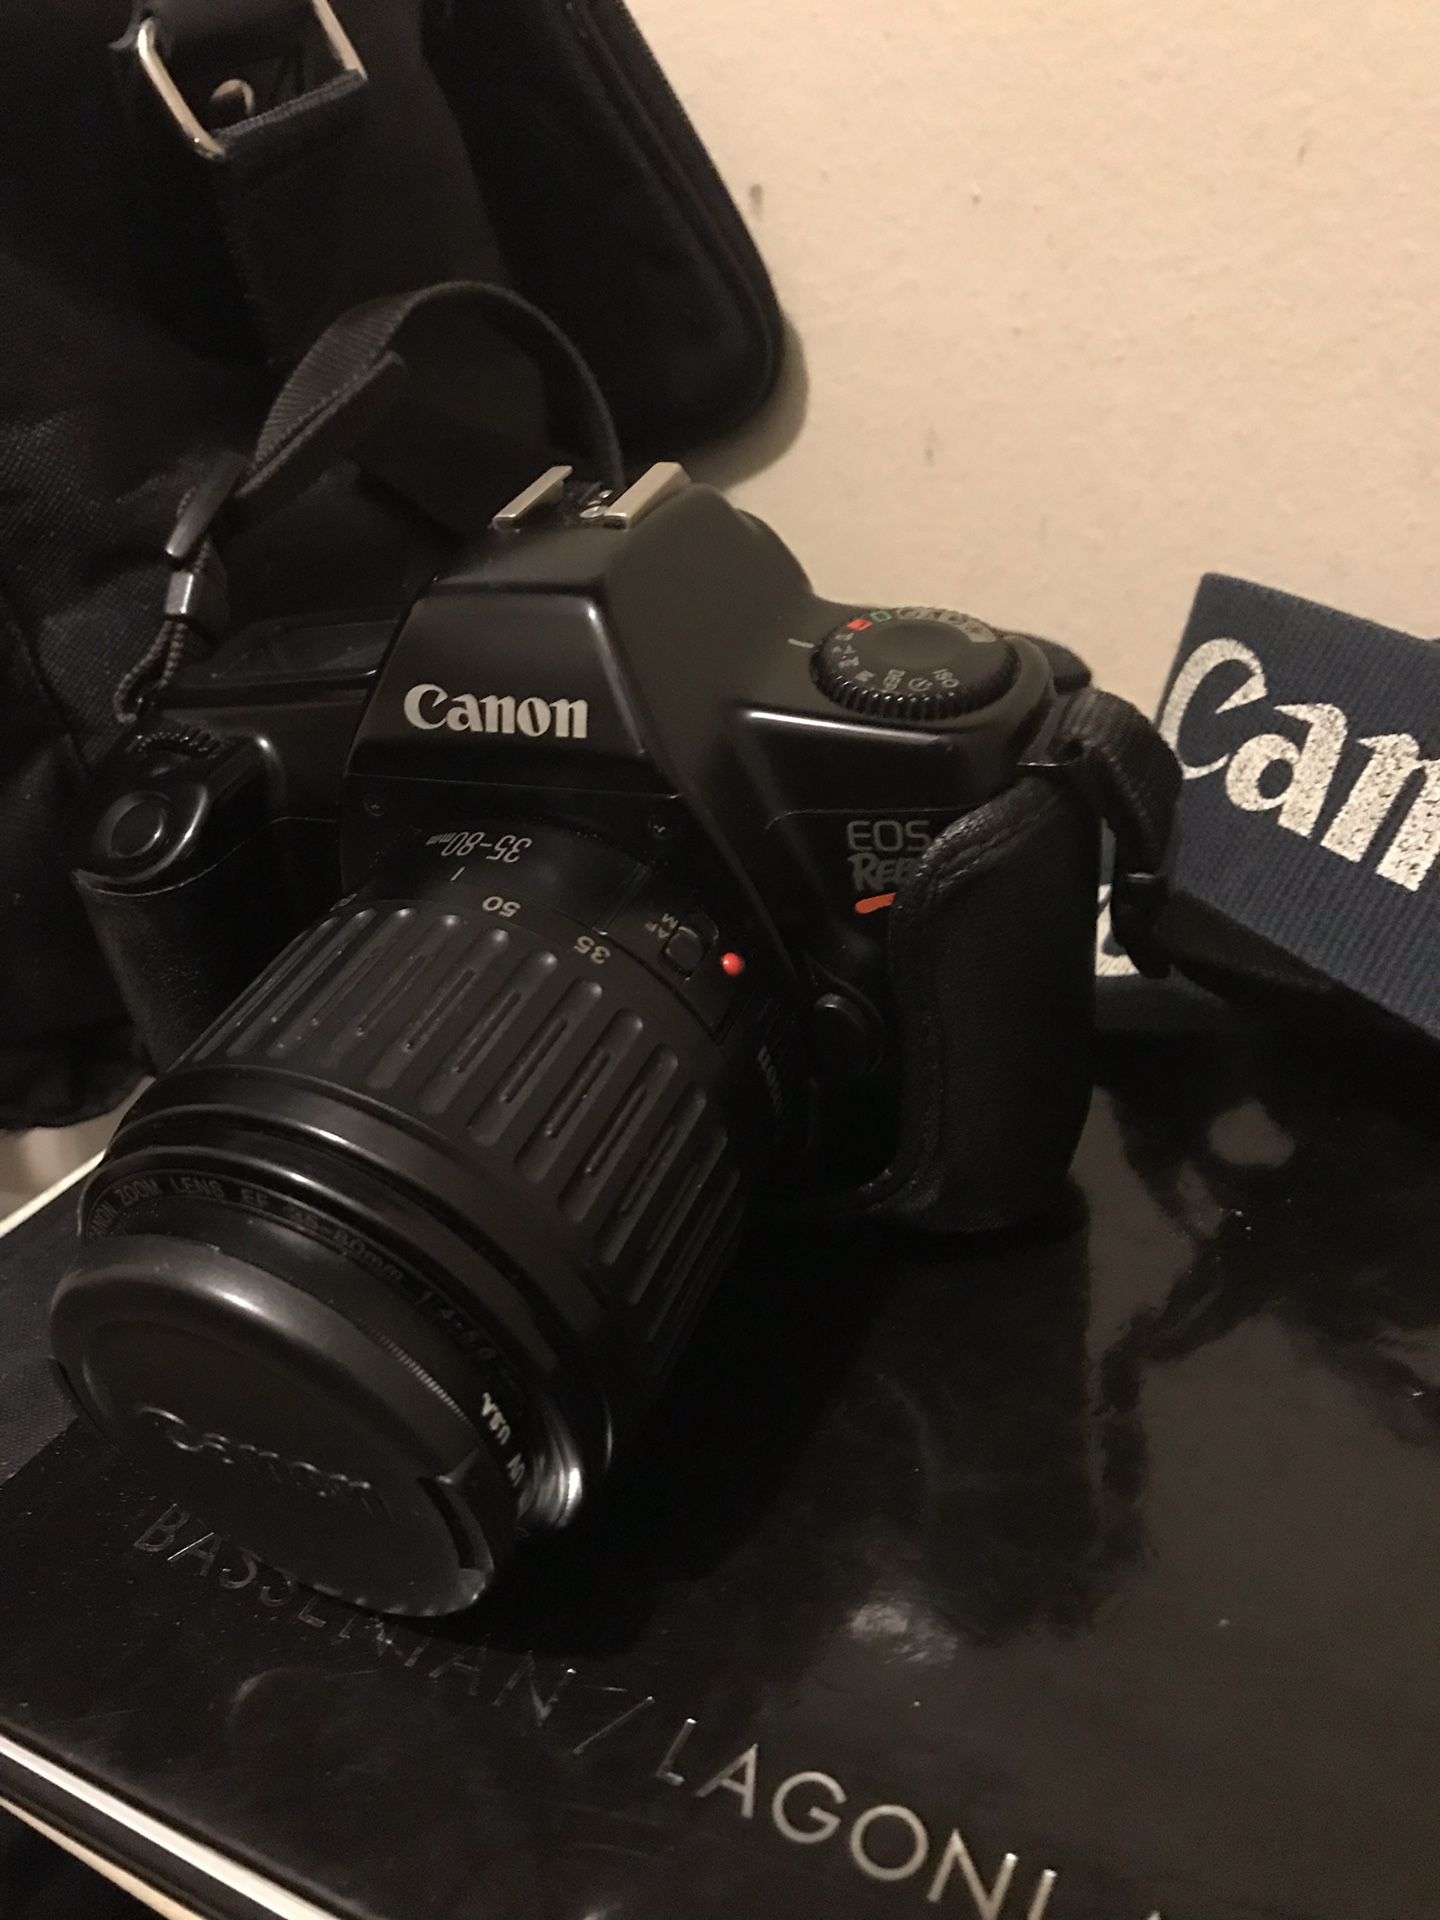 Canon EOS Rebel Film Camera W/ Accessories